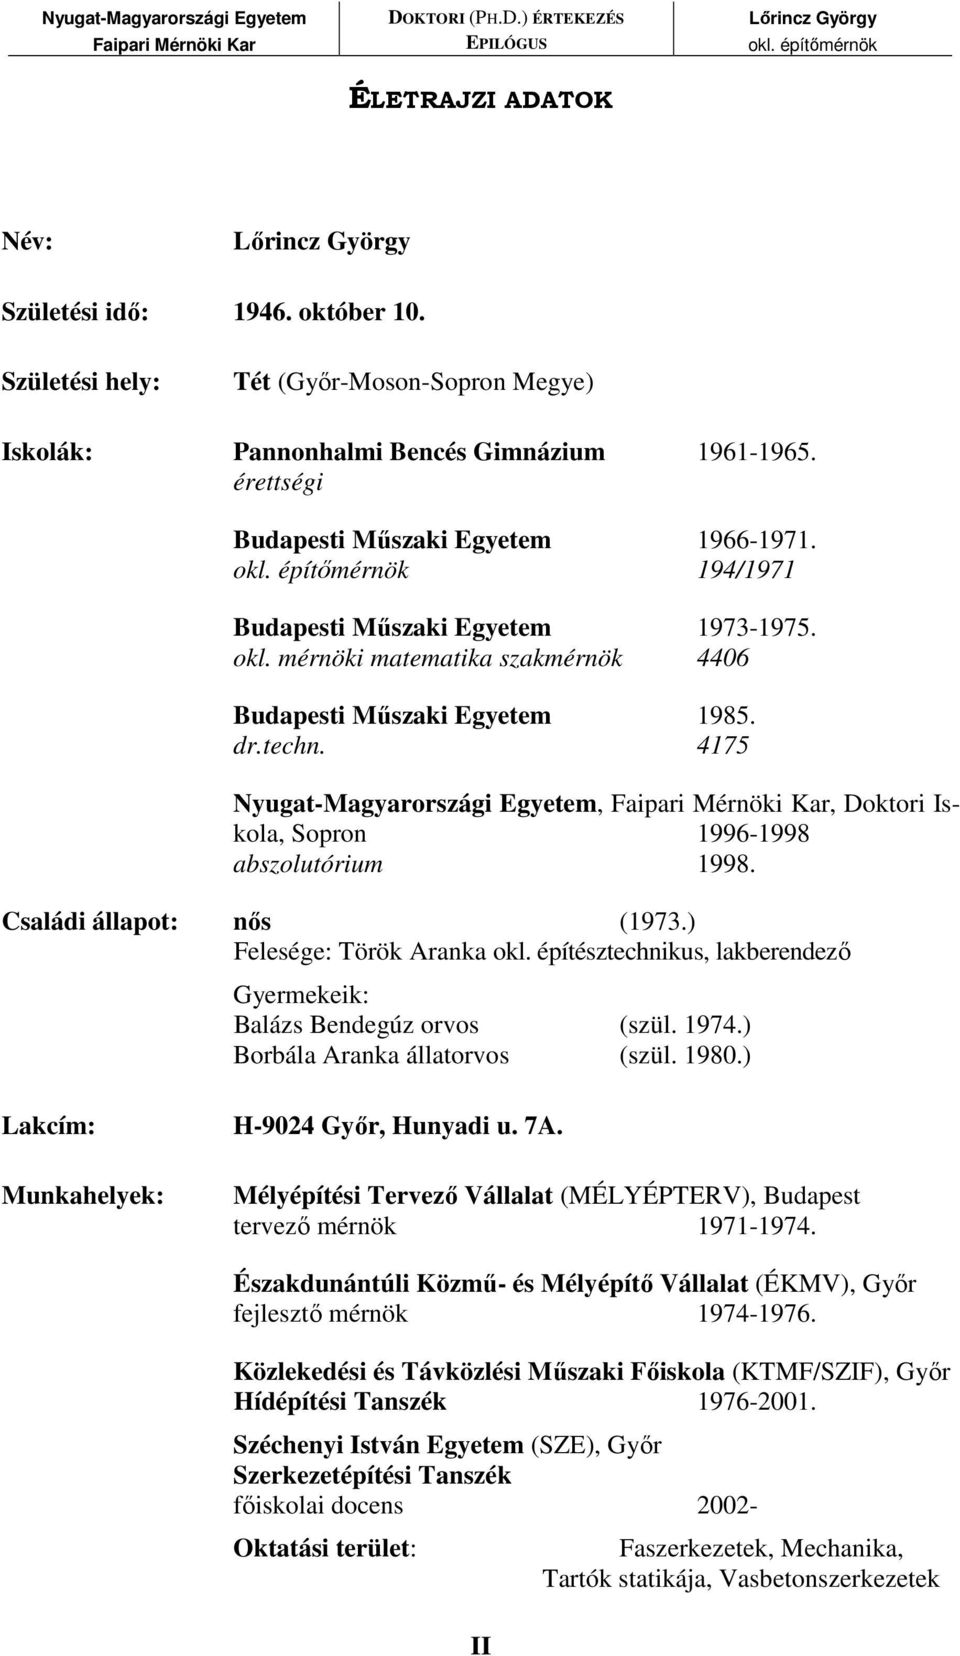 4175 Nyugat-Magyarországi Egyetem,, Doktori Iskola, Sopron 1996-1998 abszolutórium 1998. Családi állapot: nıs (1973.) Felesége: Török Aranka okl.